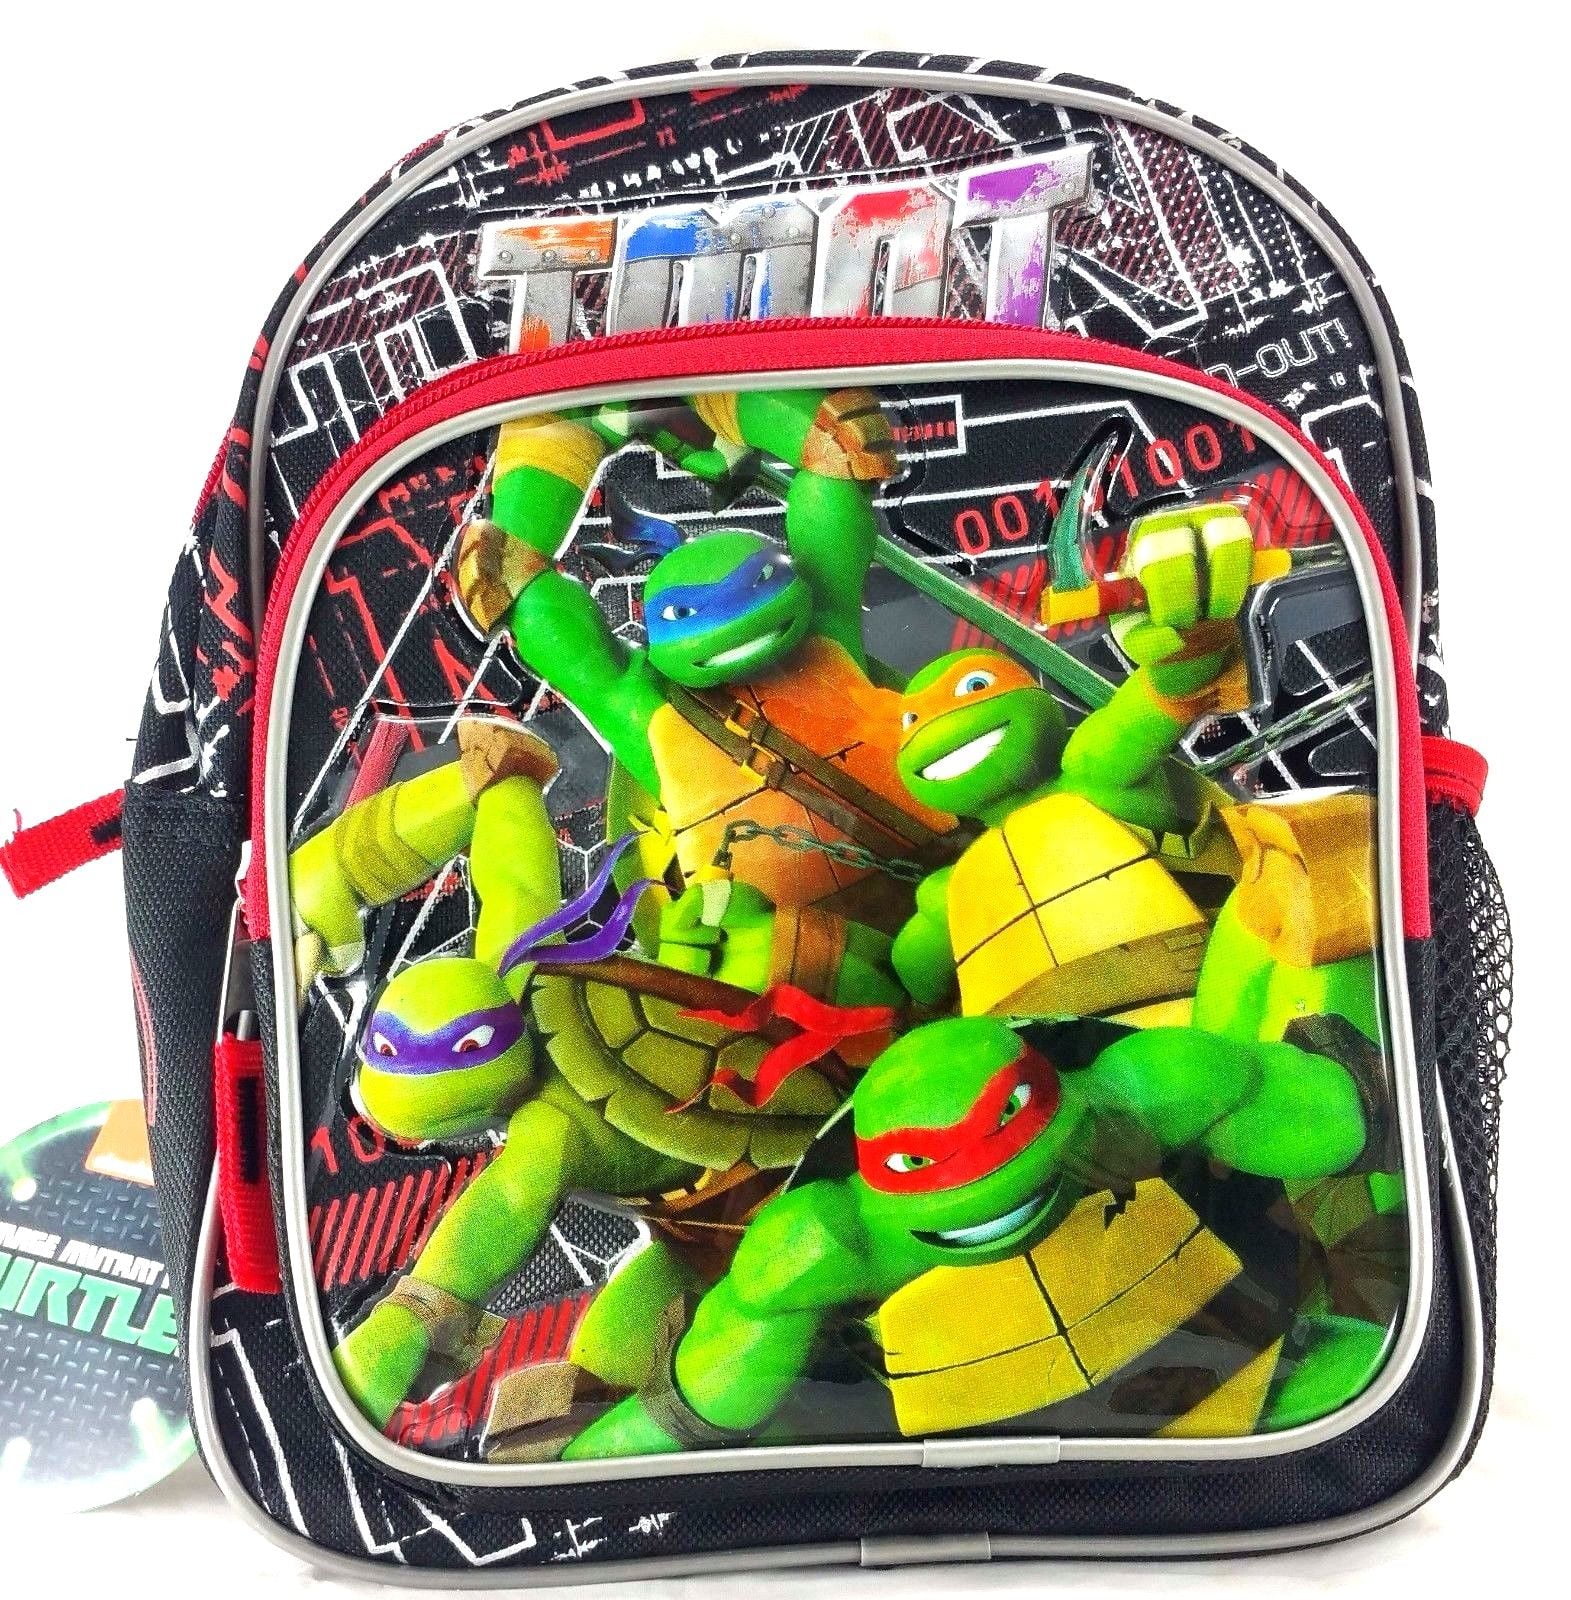 TMNT Teenage Mutant Ninja Turtles Nickeloden Pocket School Folders Set of 2 